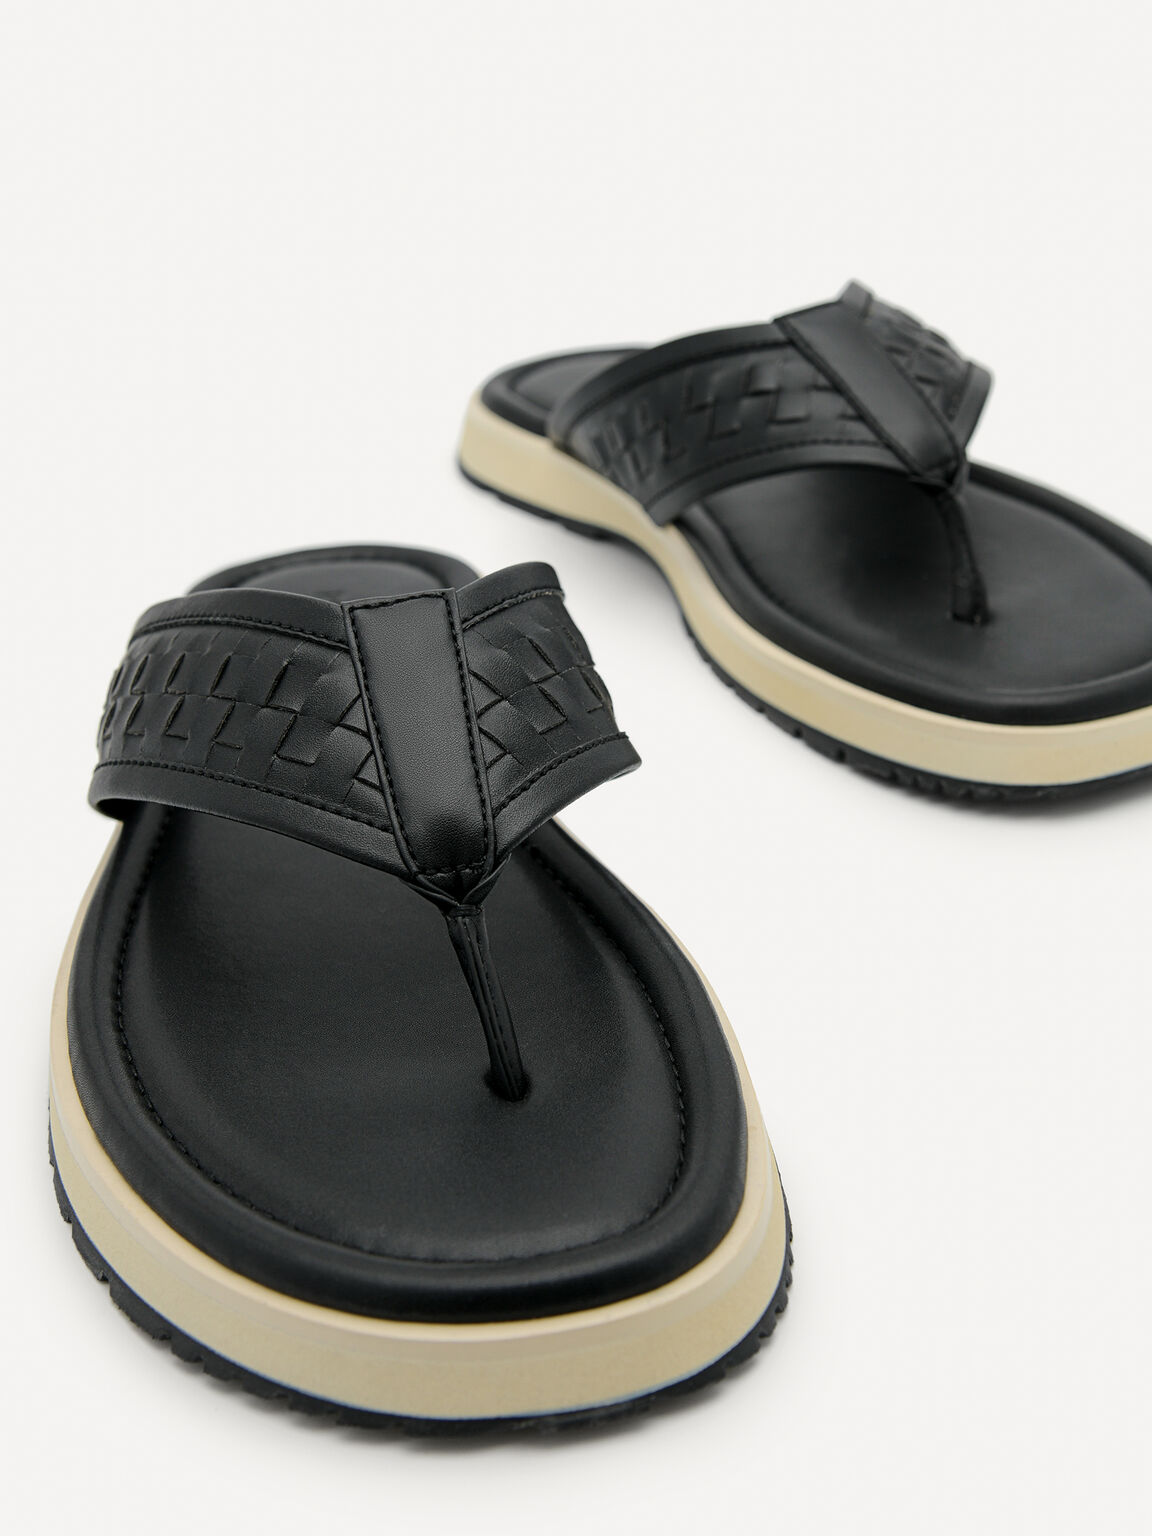 Woven Thong Sandals, Black, hi-res